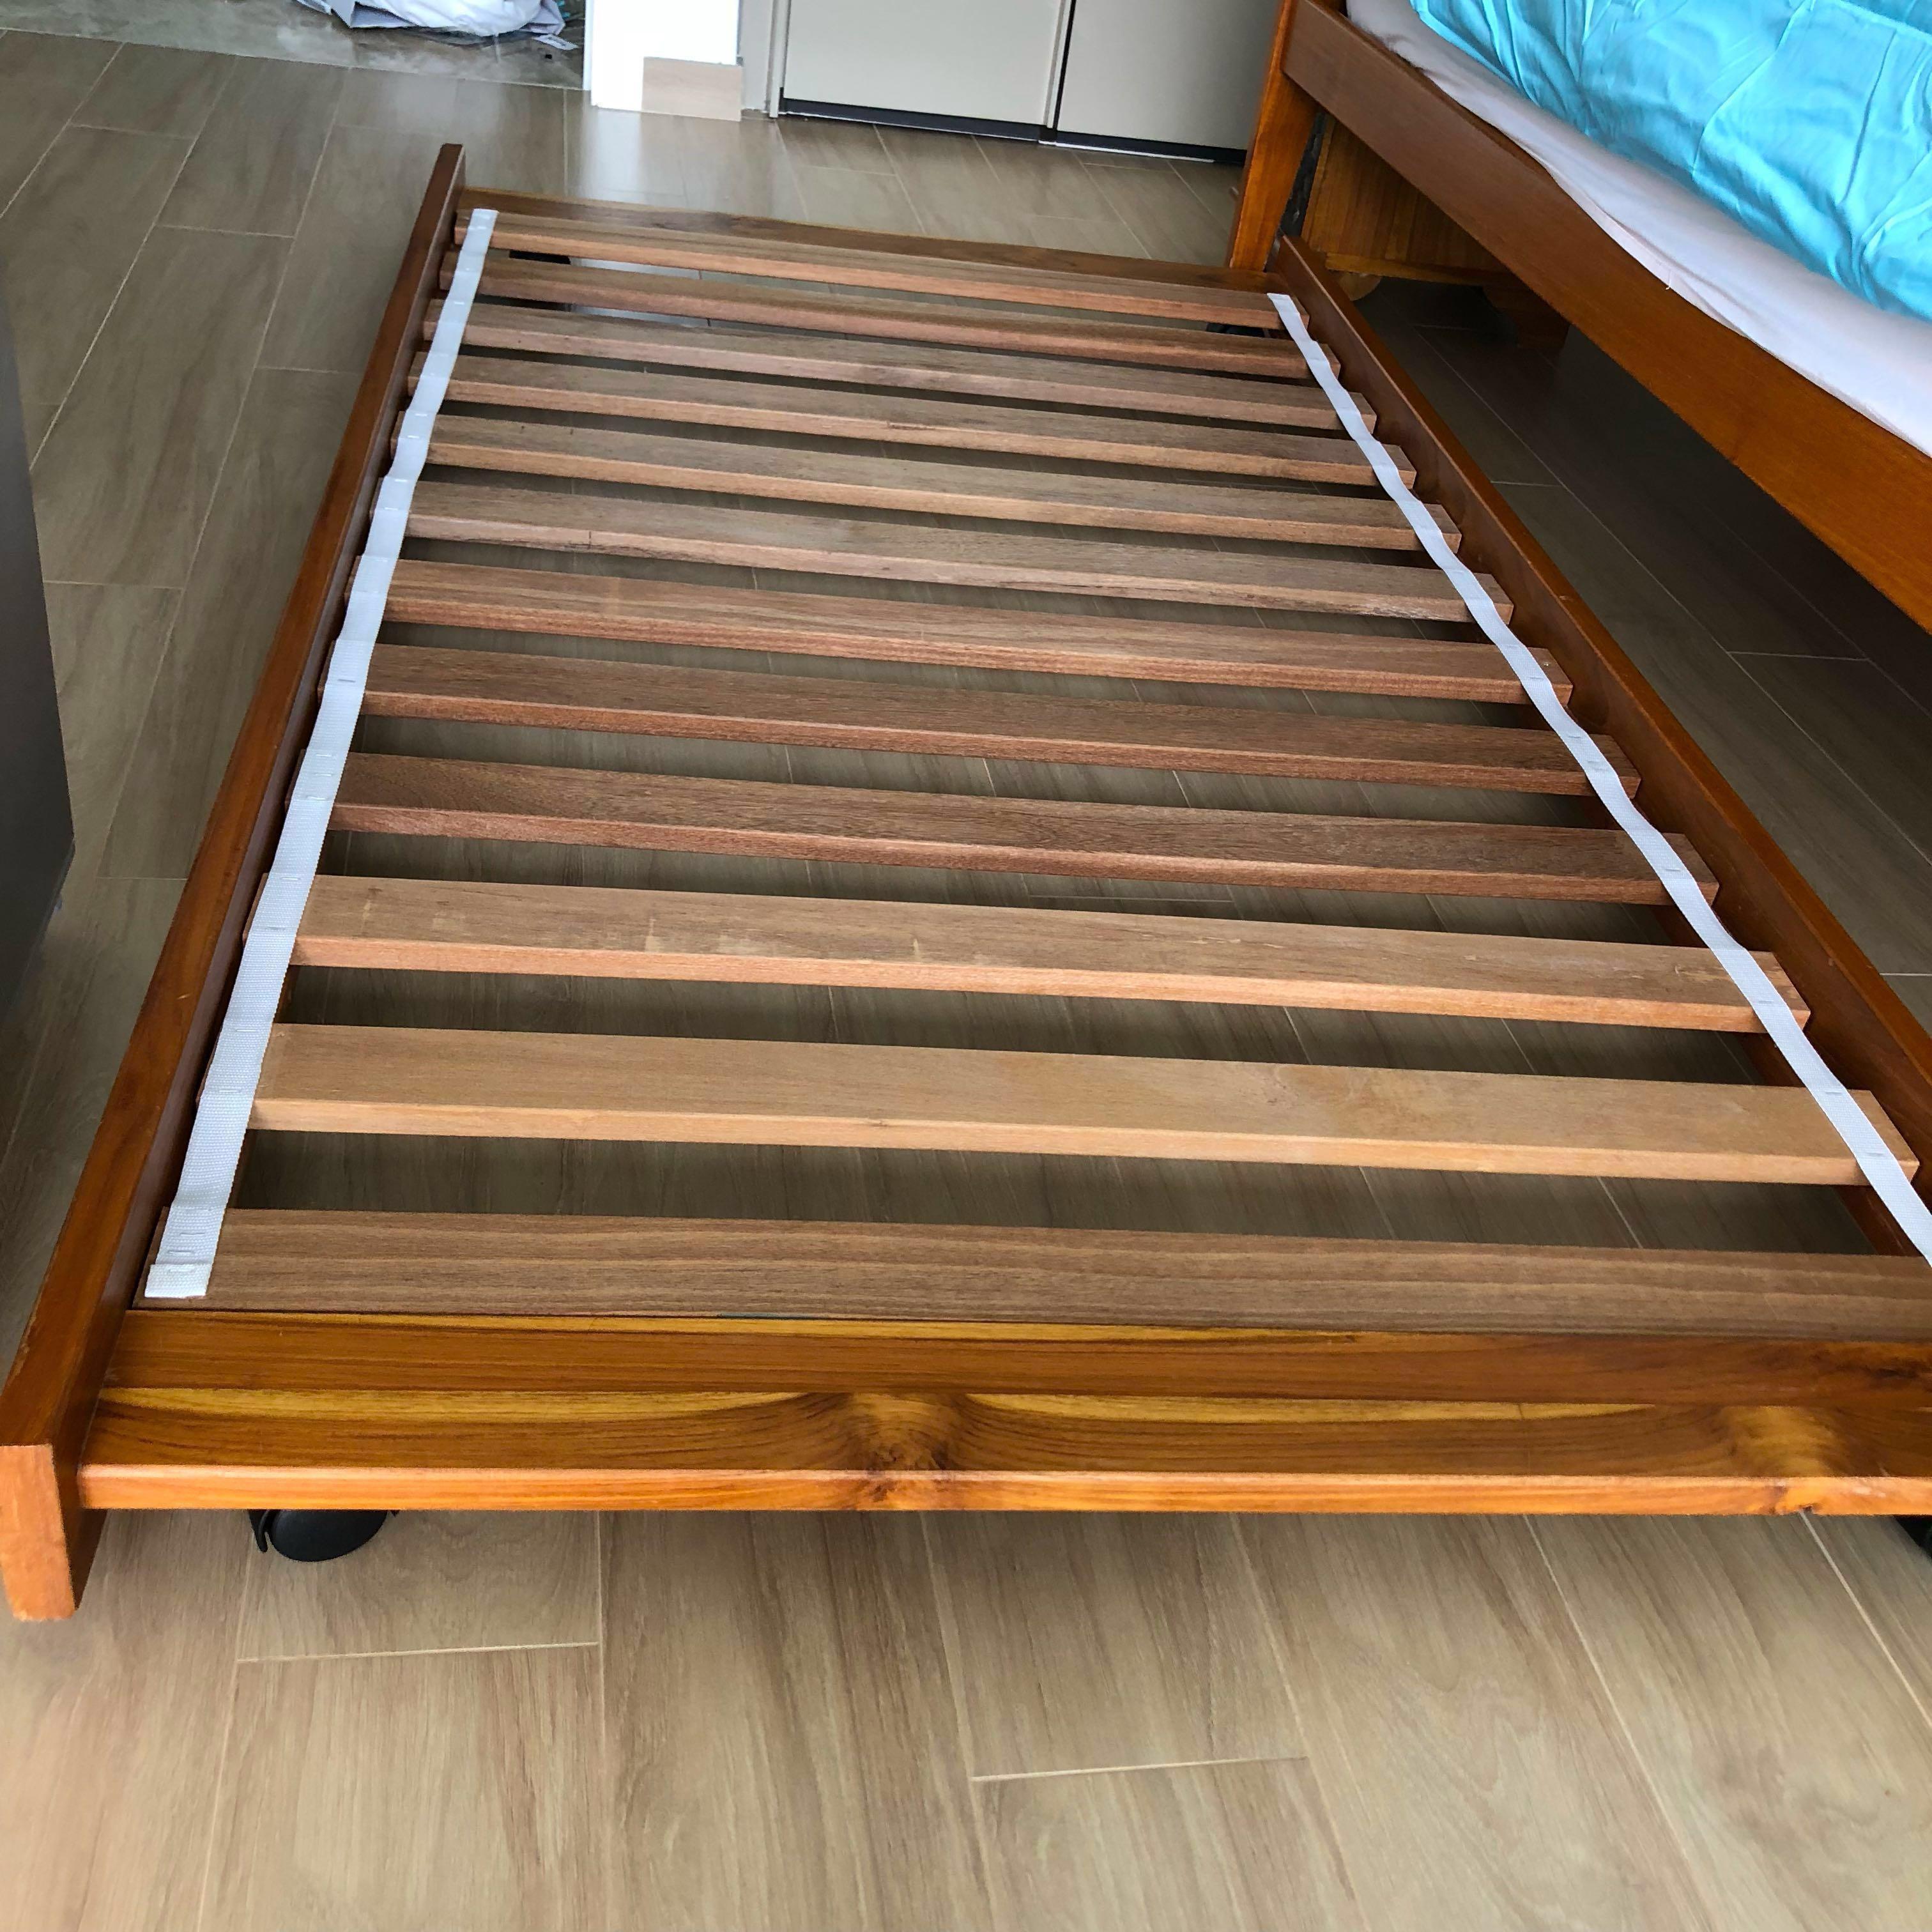 Bed Frames Mattresses On Carou, Bed Frame Casters For Hardwood Floors